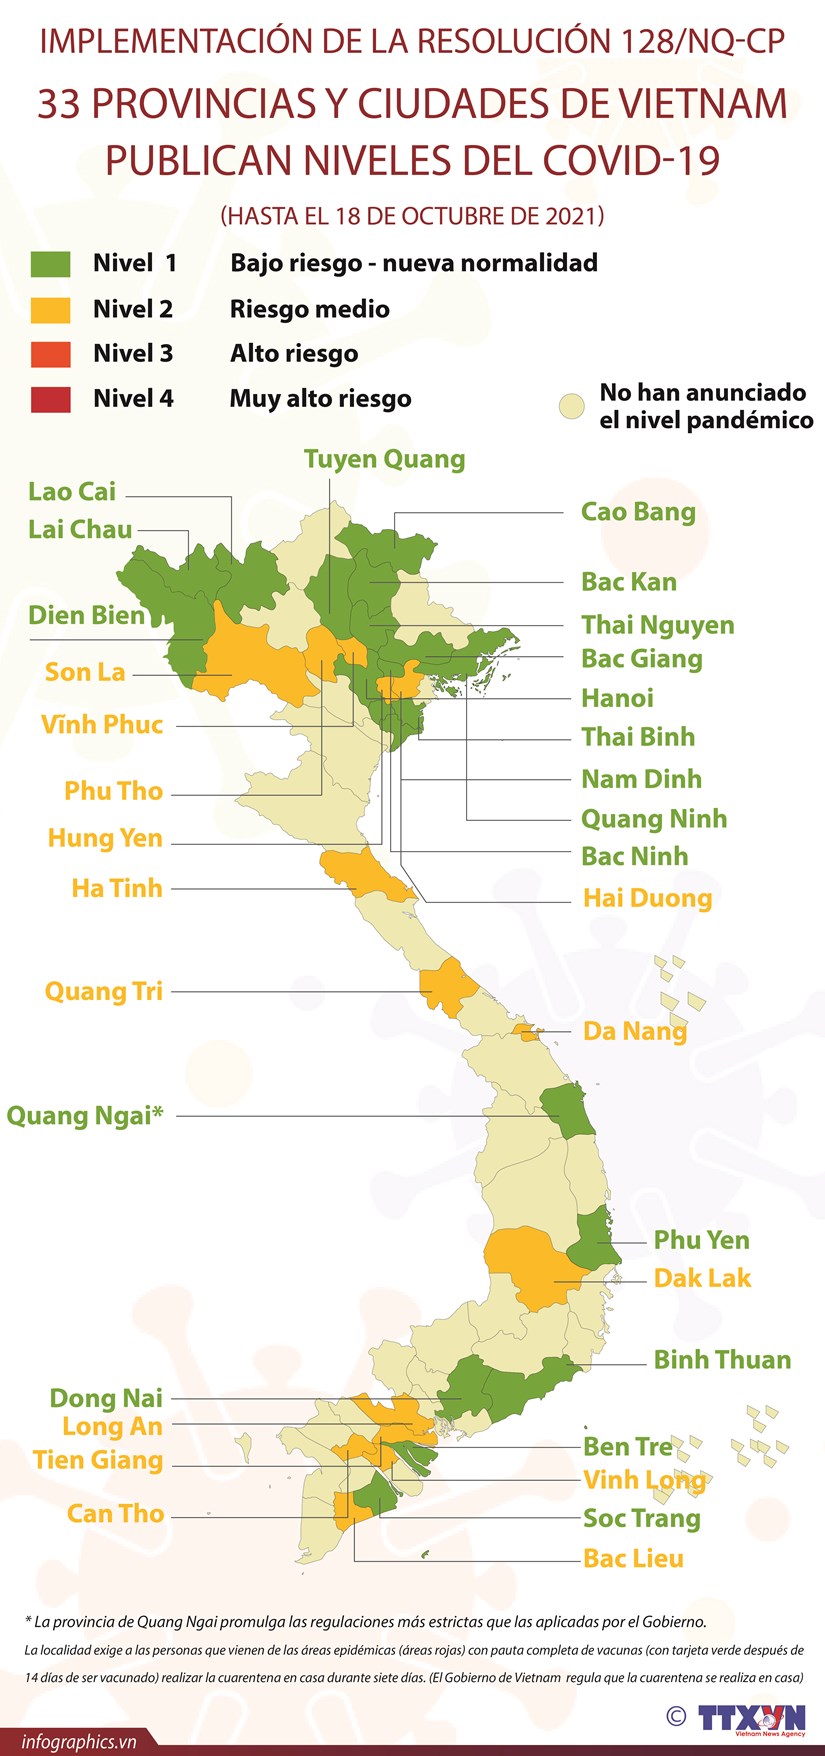 33 provincias y ciudades vietnamitas publican niveles del COVID-19 hinh anh 1